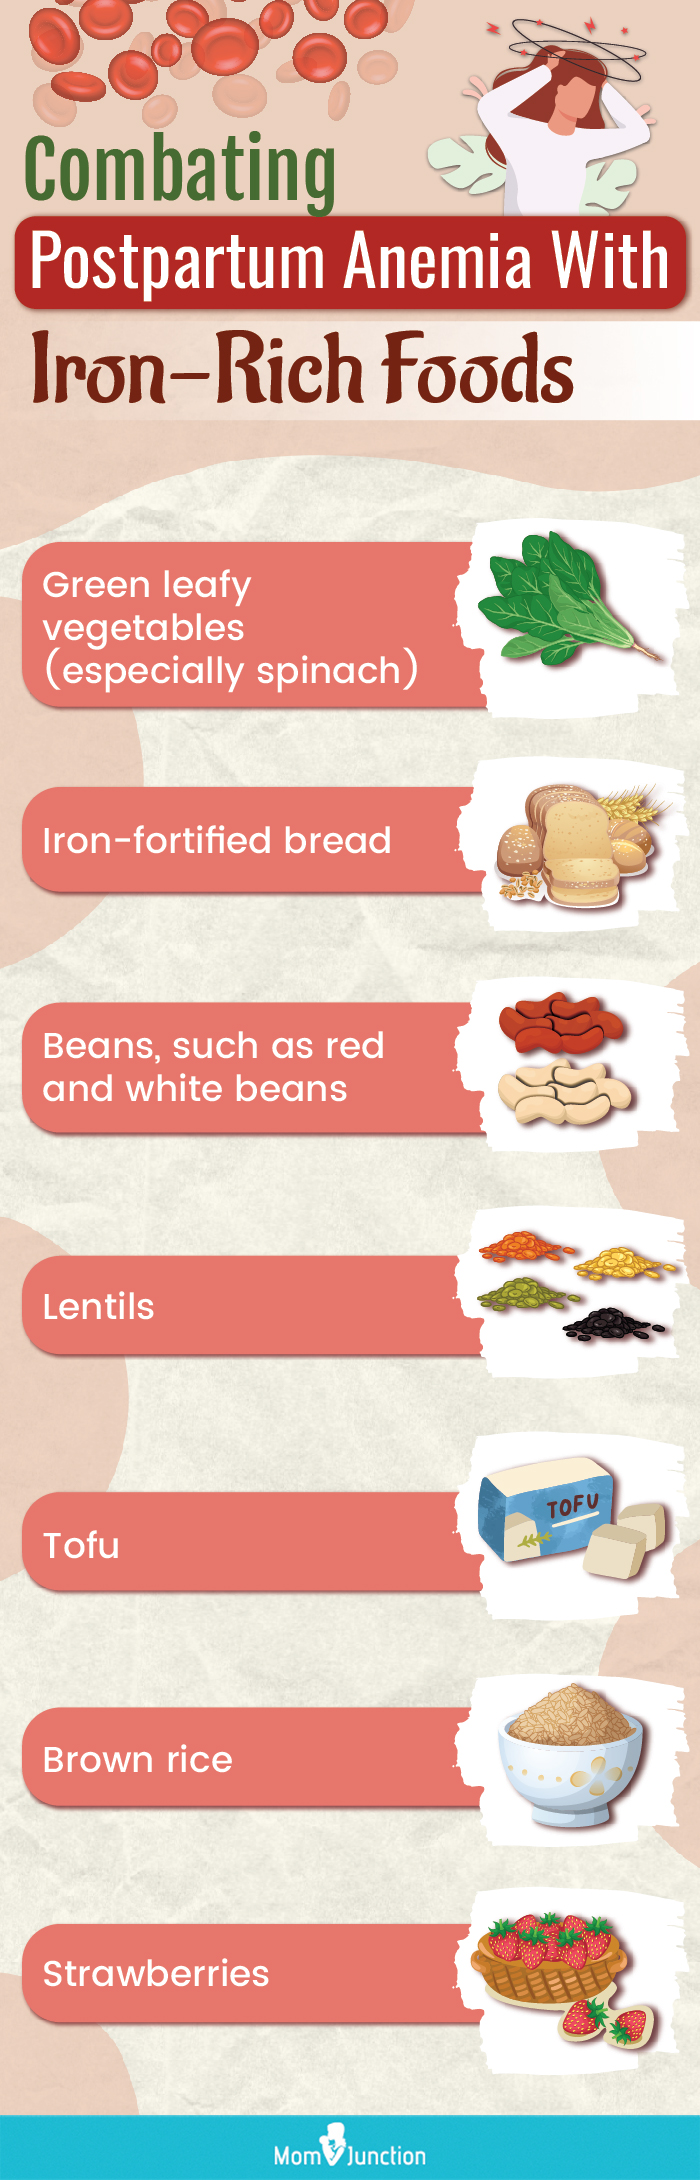 食用富含铁的食物来控制产后贫血(信息图)